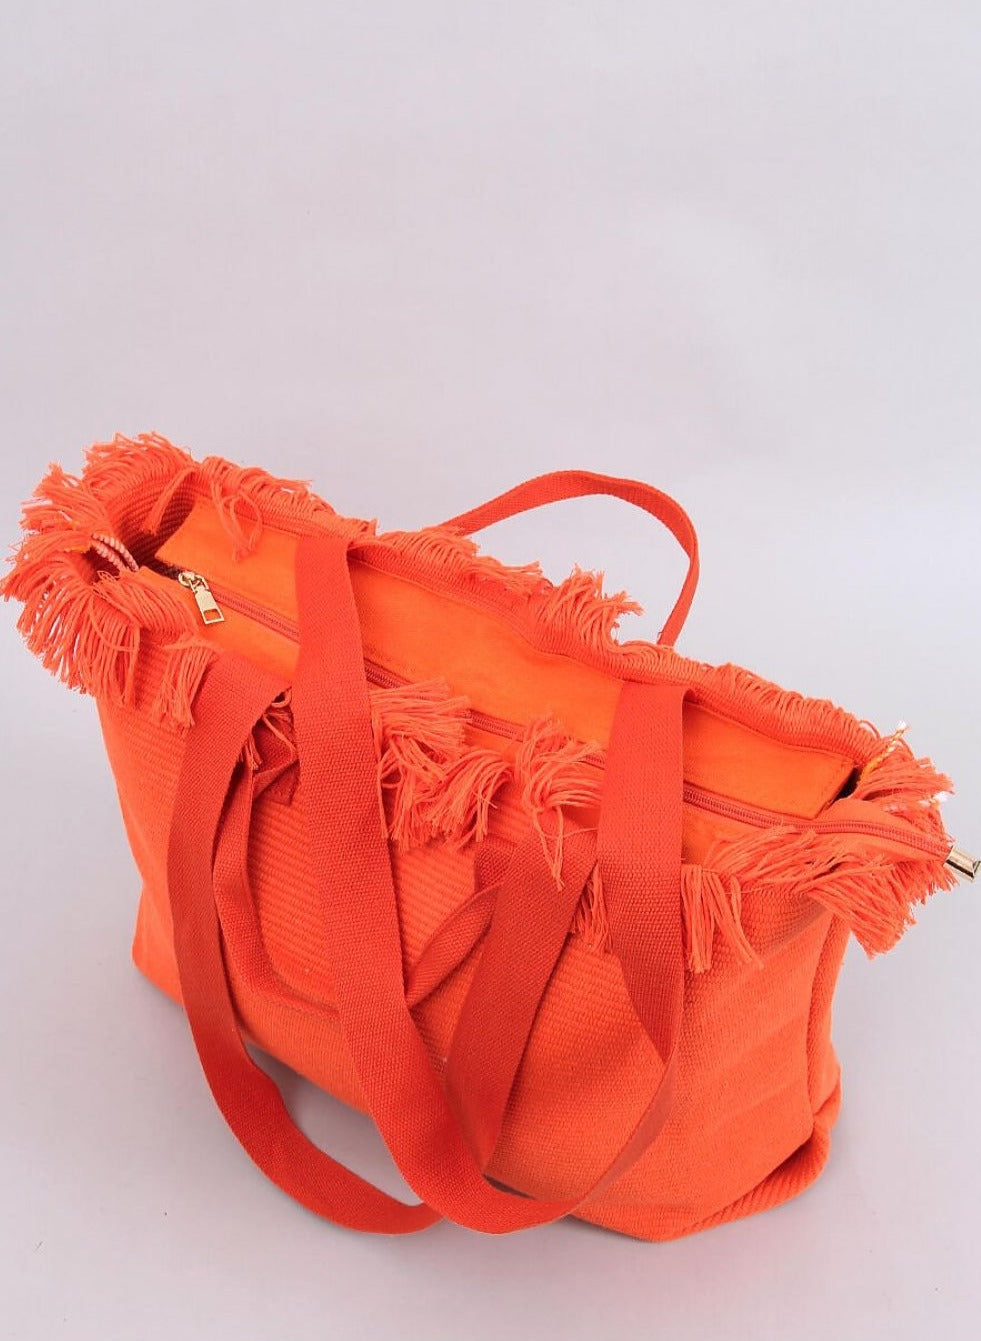 TEEK - Orange Fringe Top Beach Bag BAG TEEK MH   